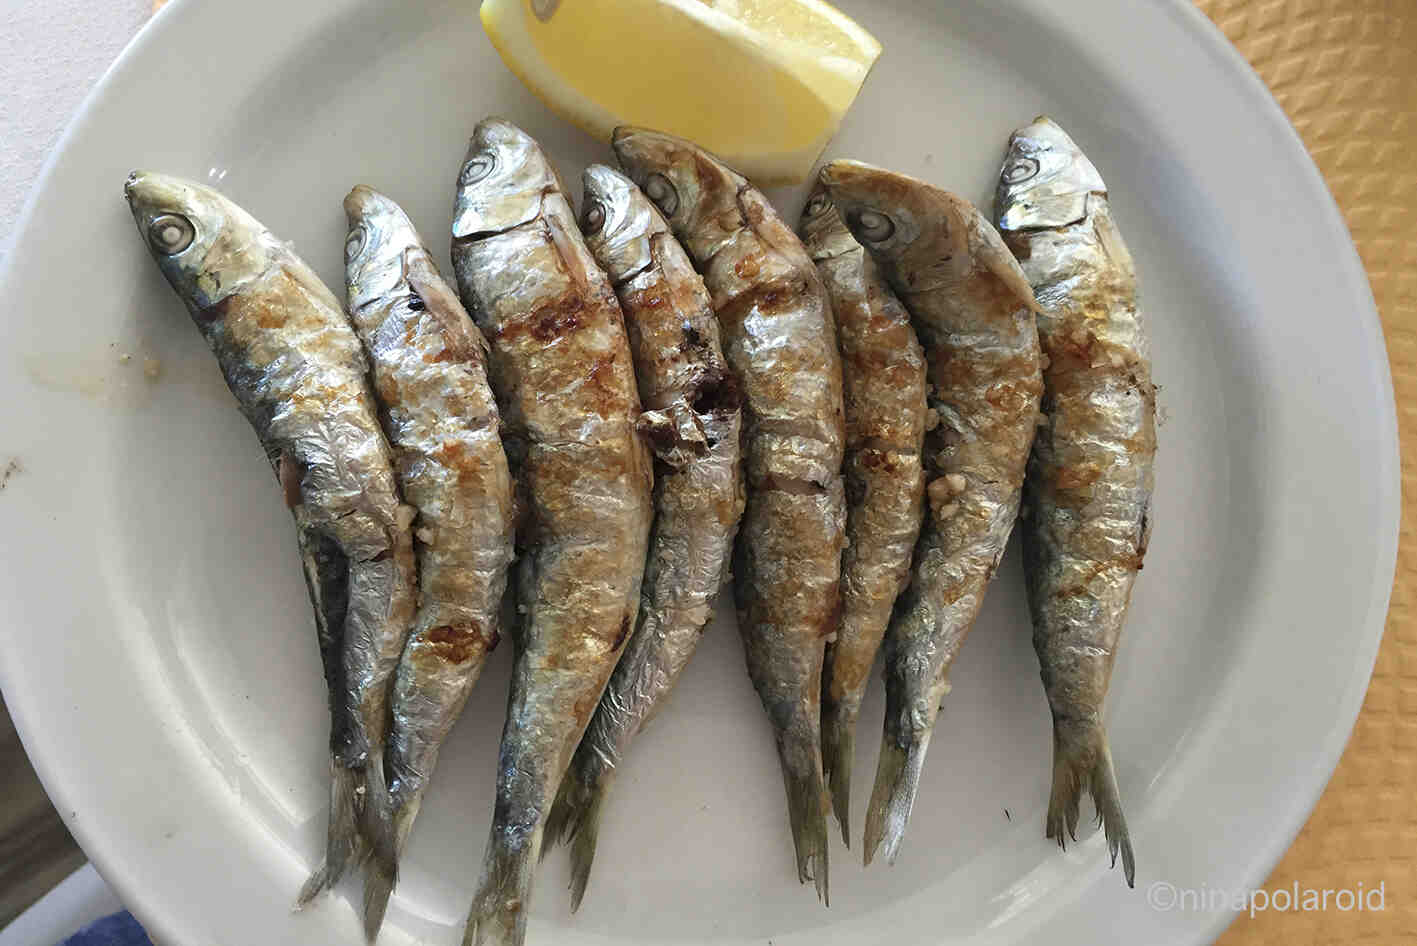 Comment conserver des sardines ?